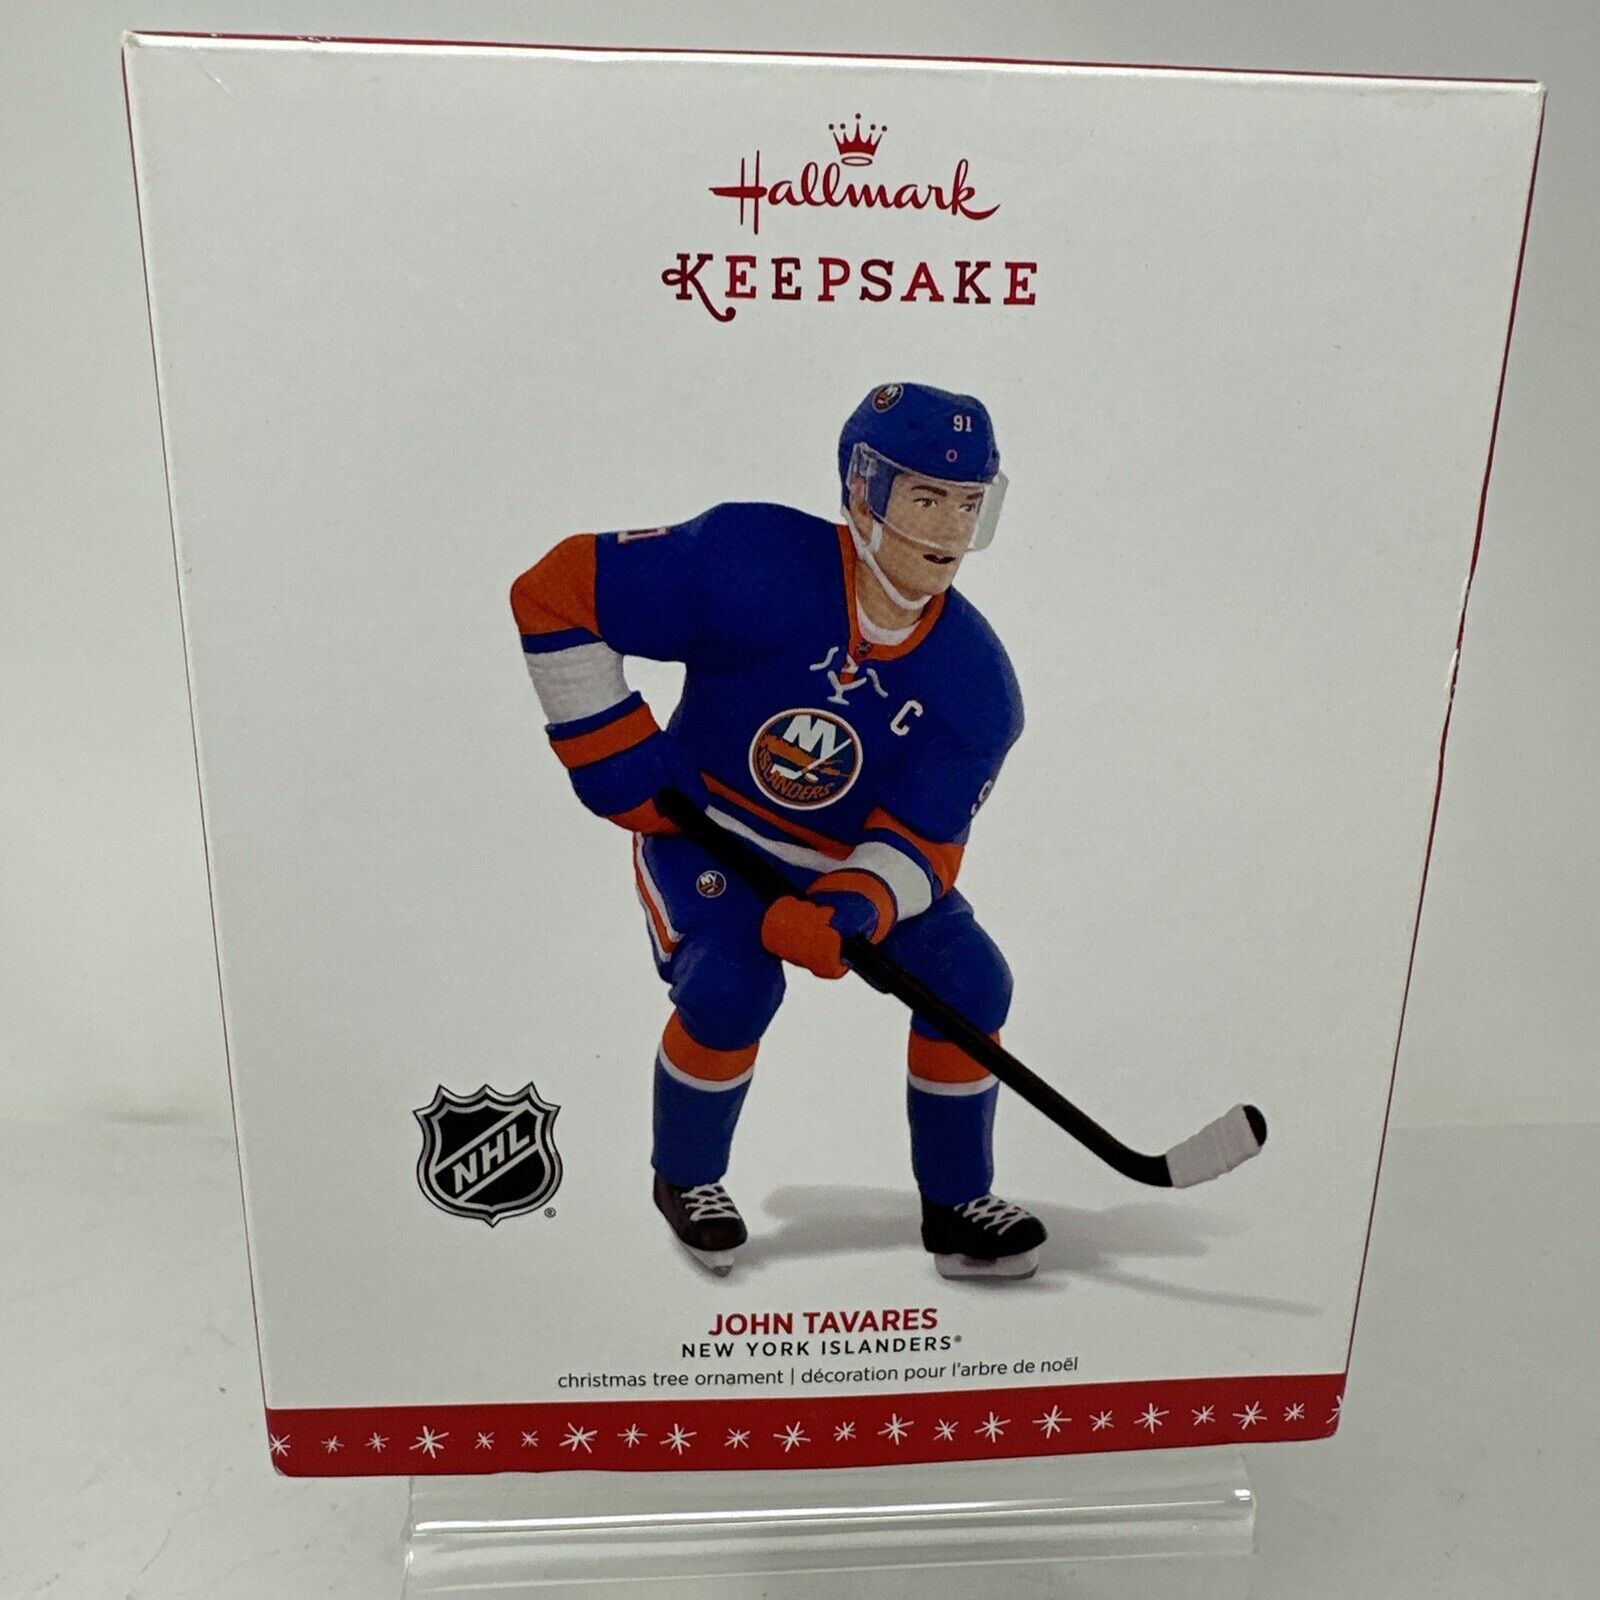 2016 NHL John Tavares New York Islanders Hallmark Keepsake Christmas Ornament